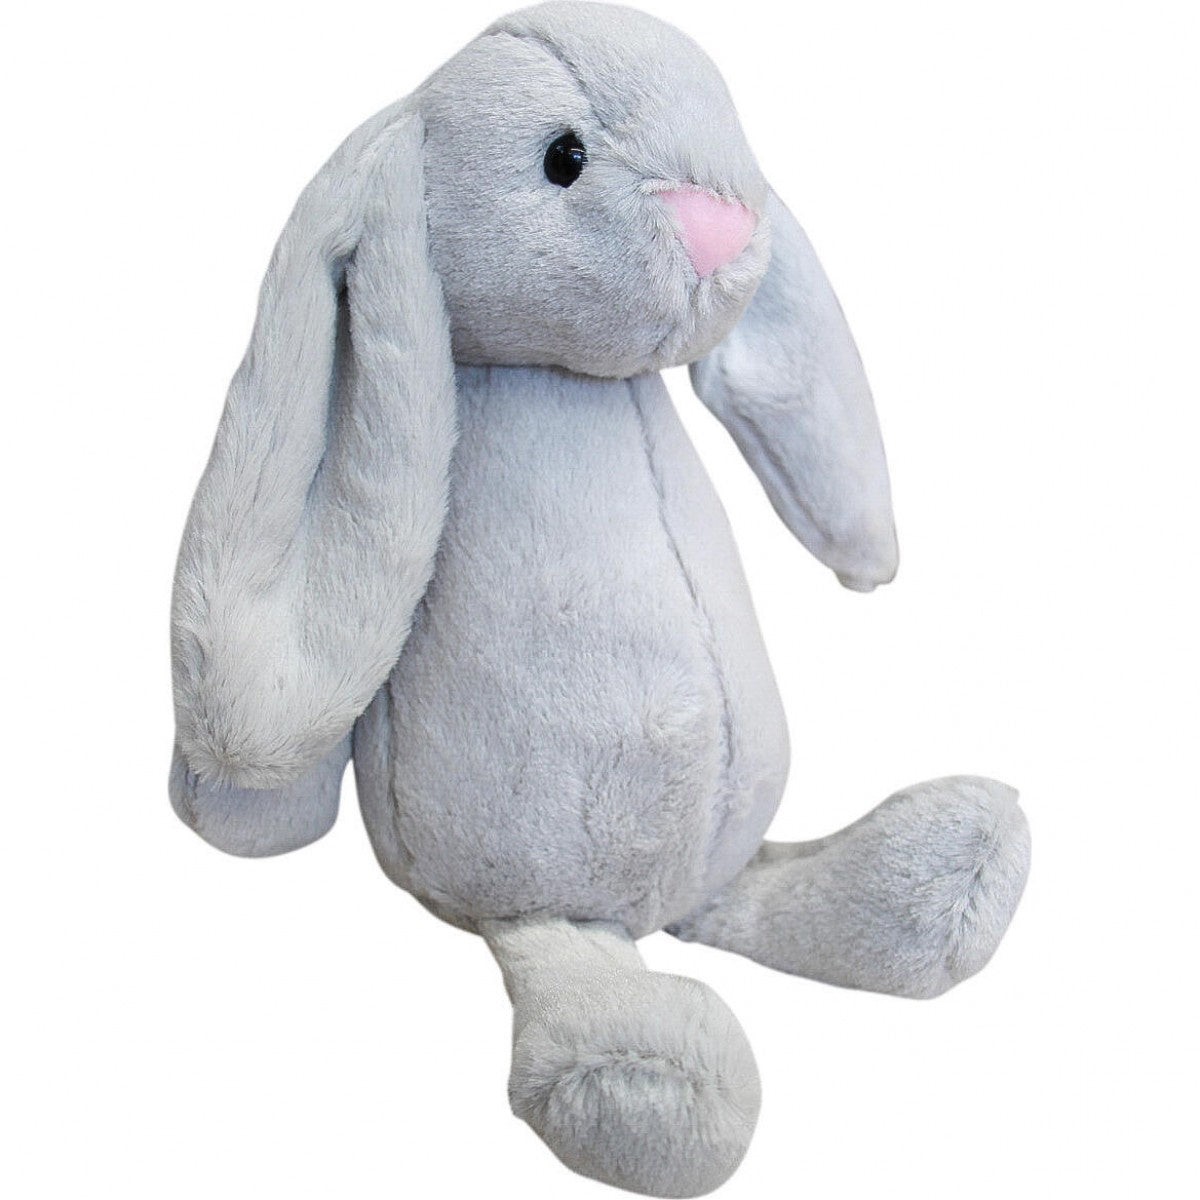 Plush Rabbit